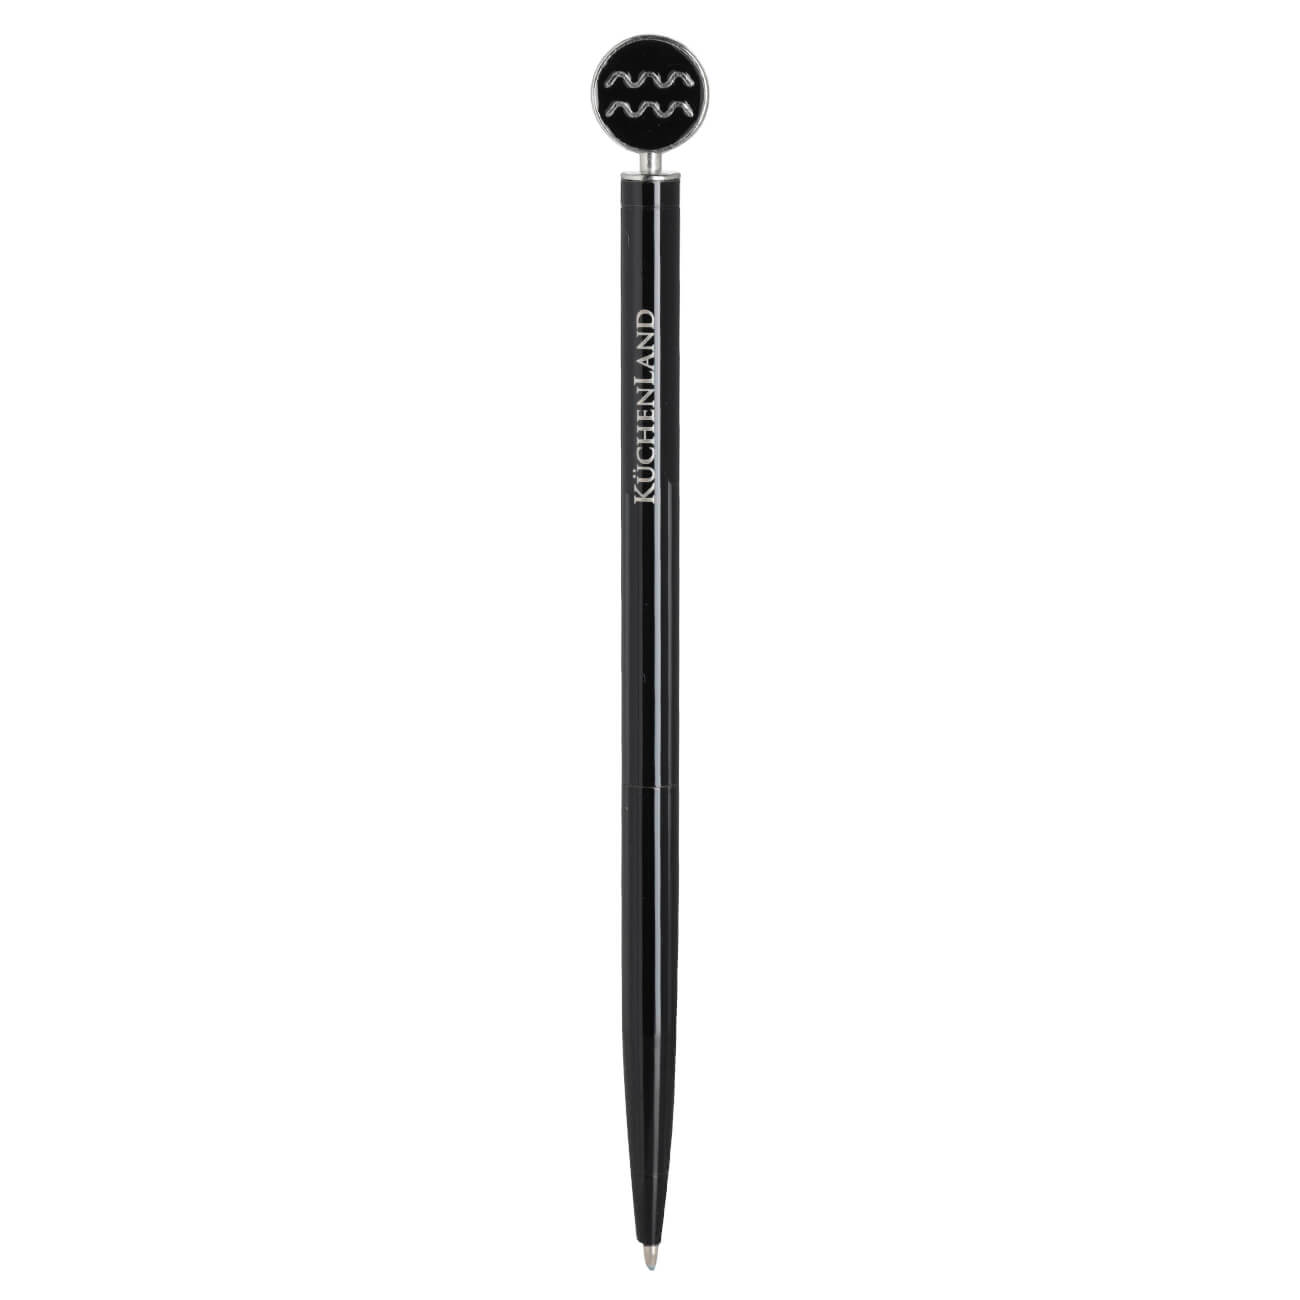 Ручка шариковая, 15 см, с фигуркой, сталь, черно-серебристая, Водолей, Zodiac ручка скоба cappio pc183 96 мм бронза